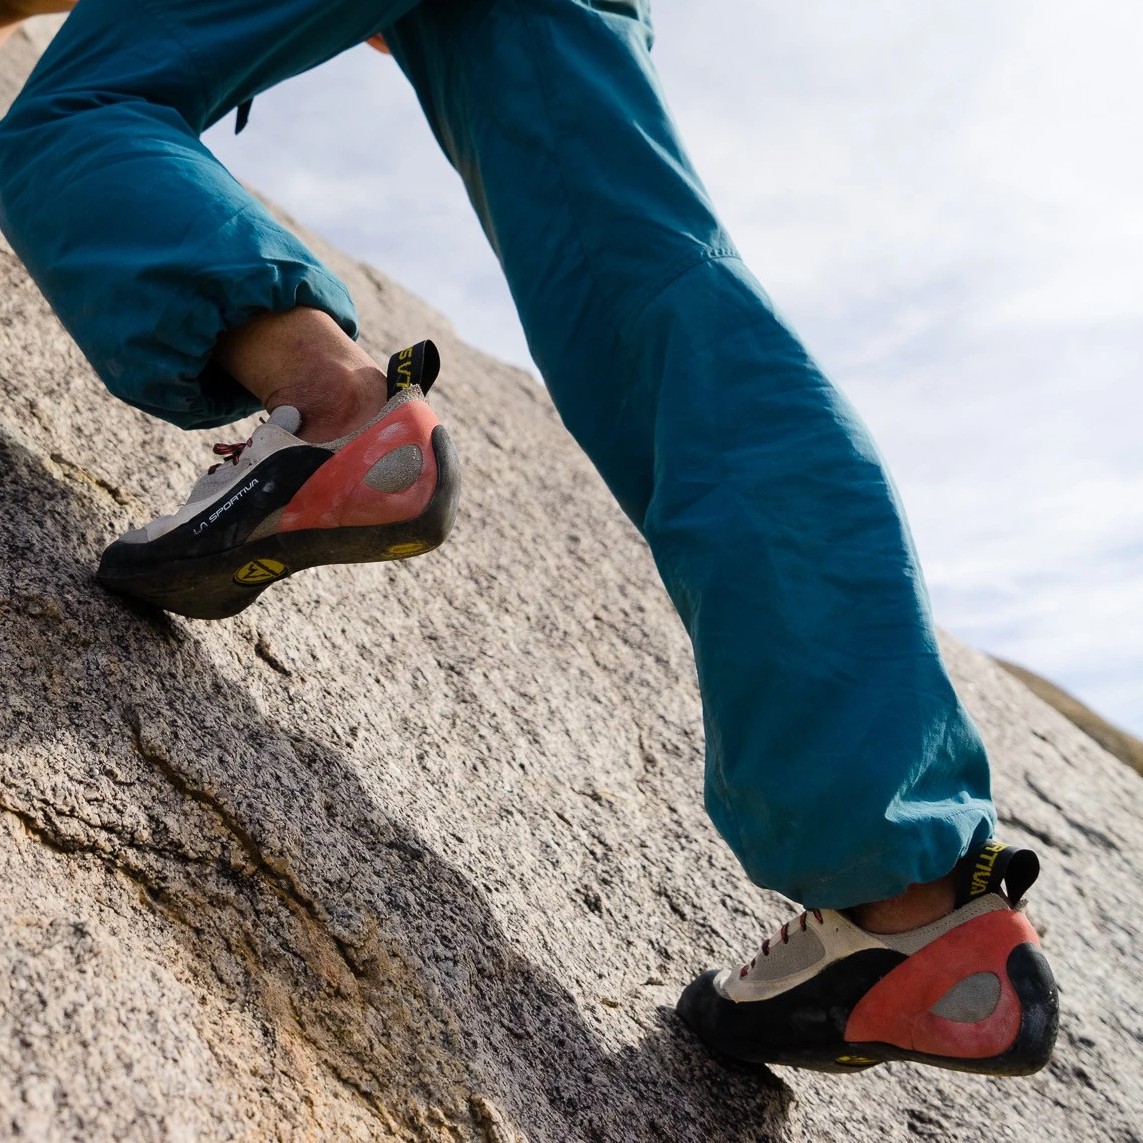 La Sportiva Finale Woman Rock Climbing Shoe